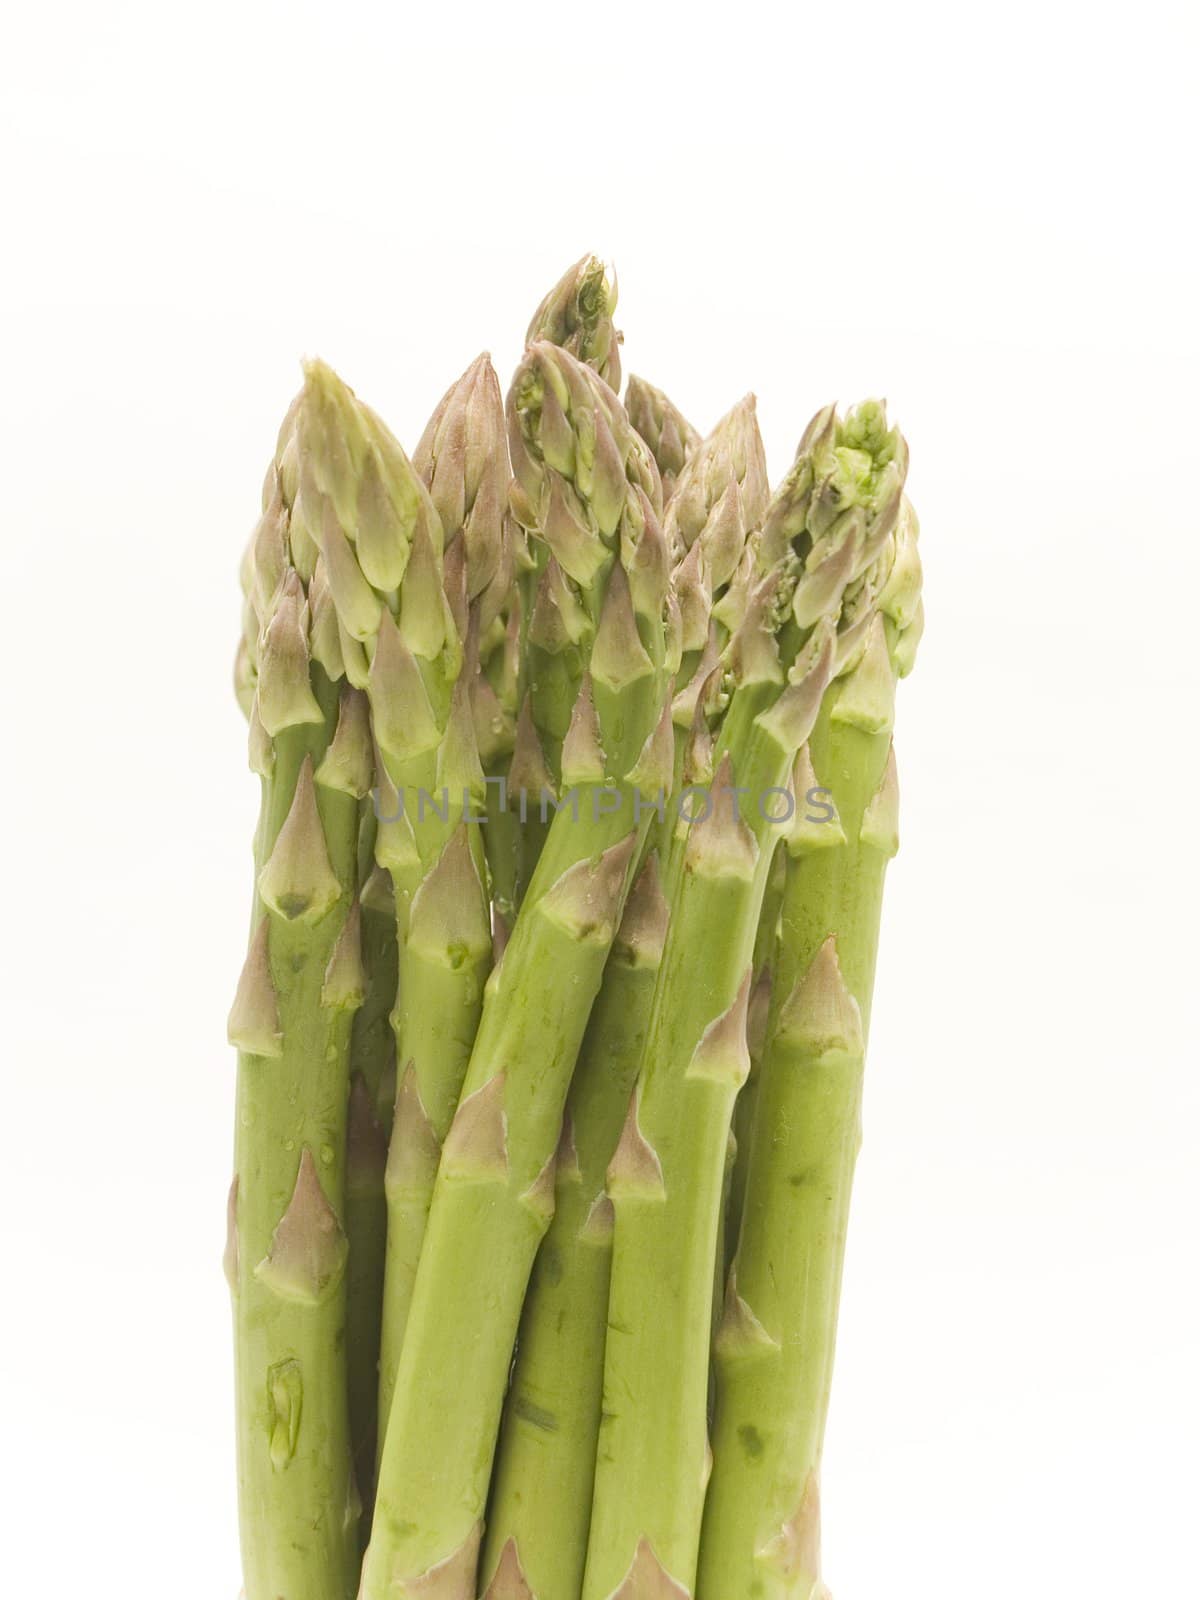 	
asparagus